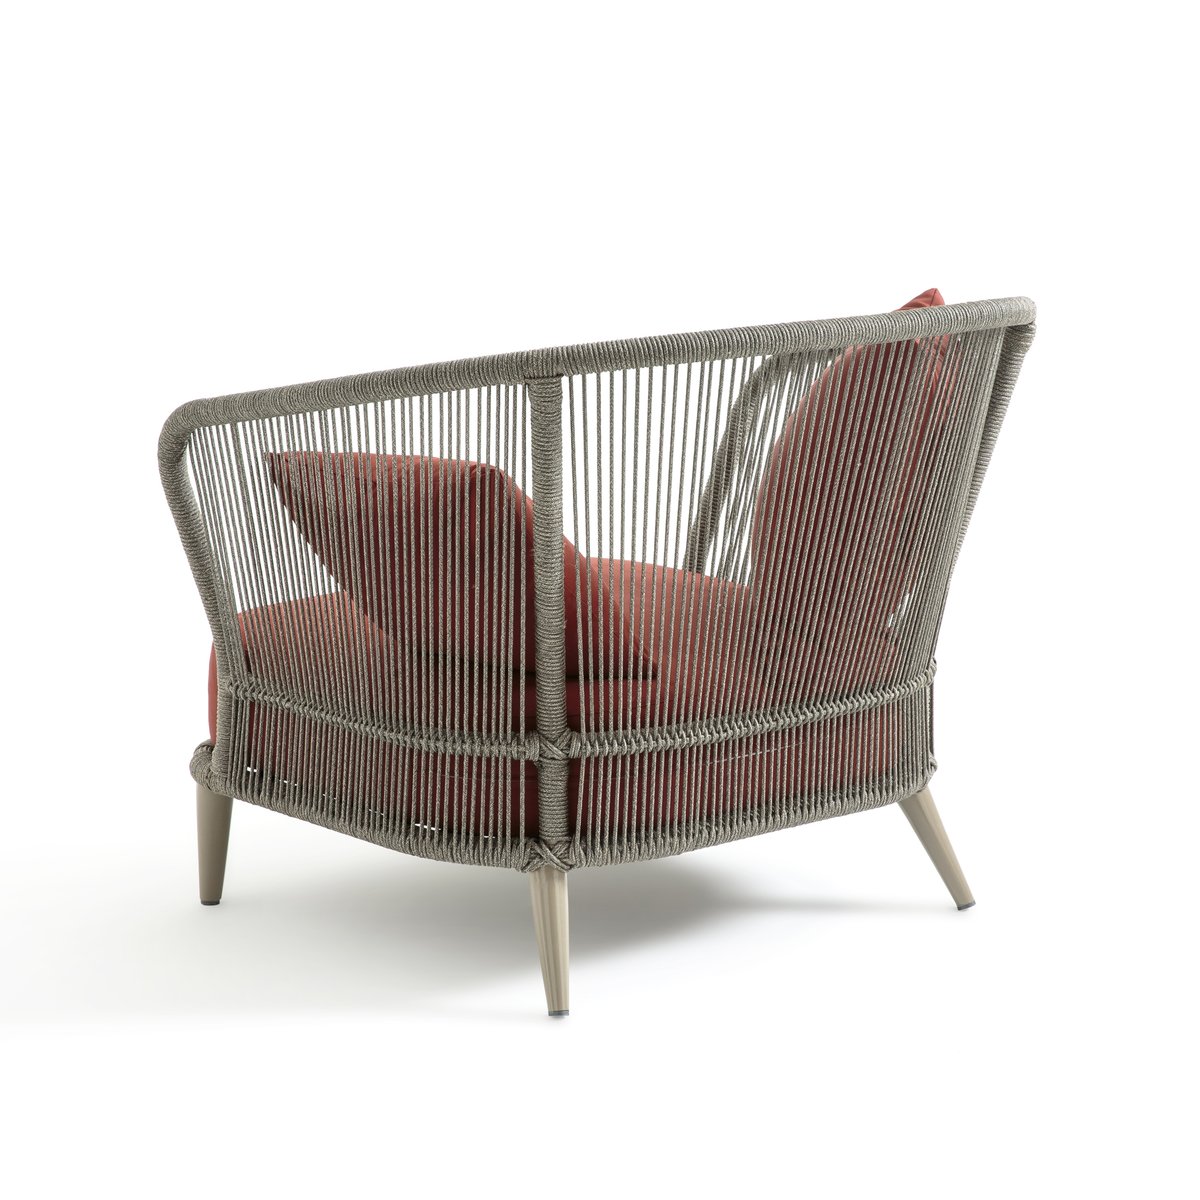 Кресло La Redoute Для сада дизайн Э Галлины Cestino единый размер каштановый - фото 4